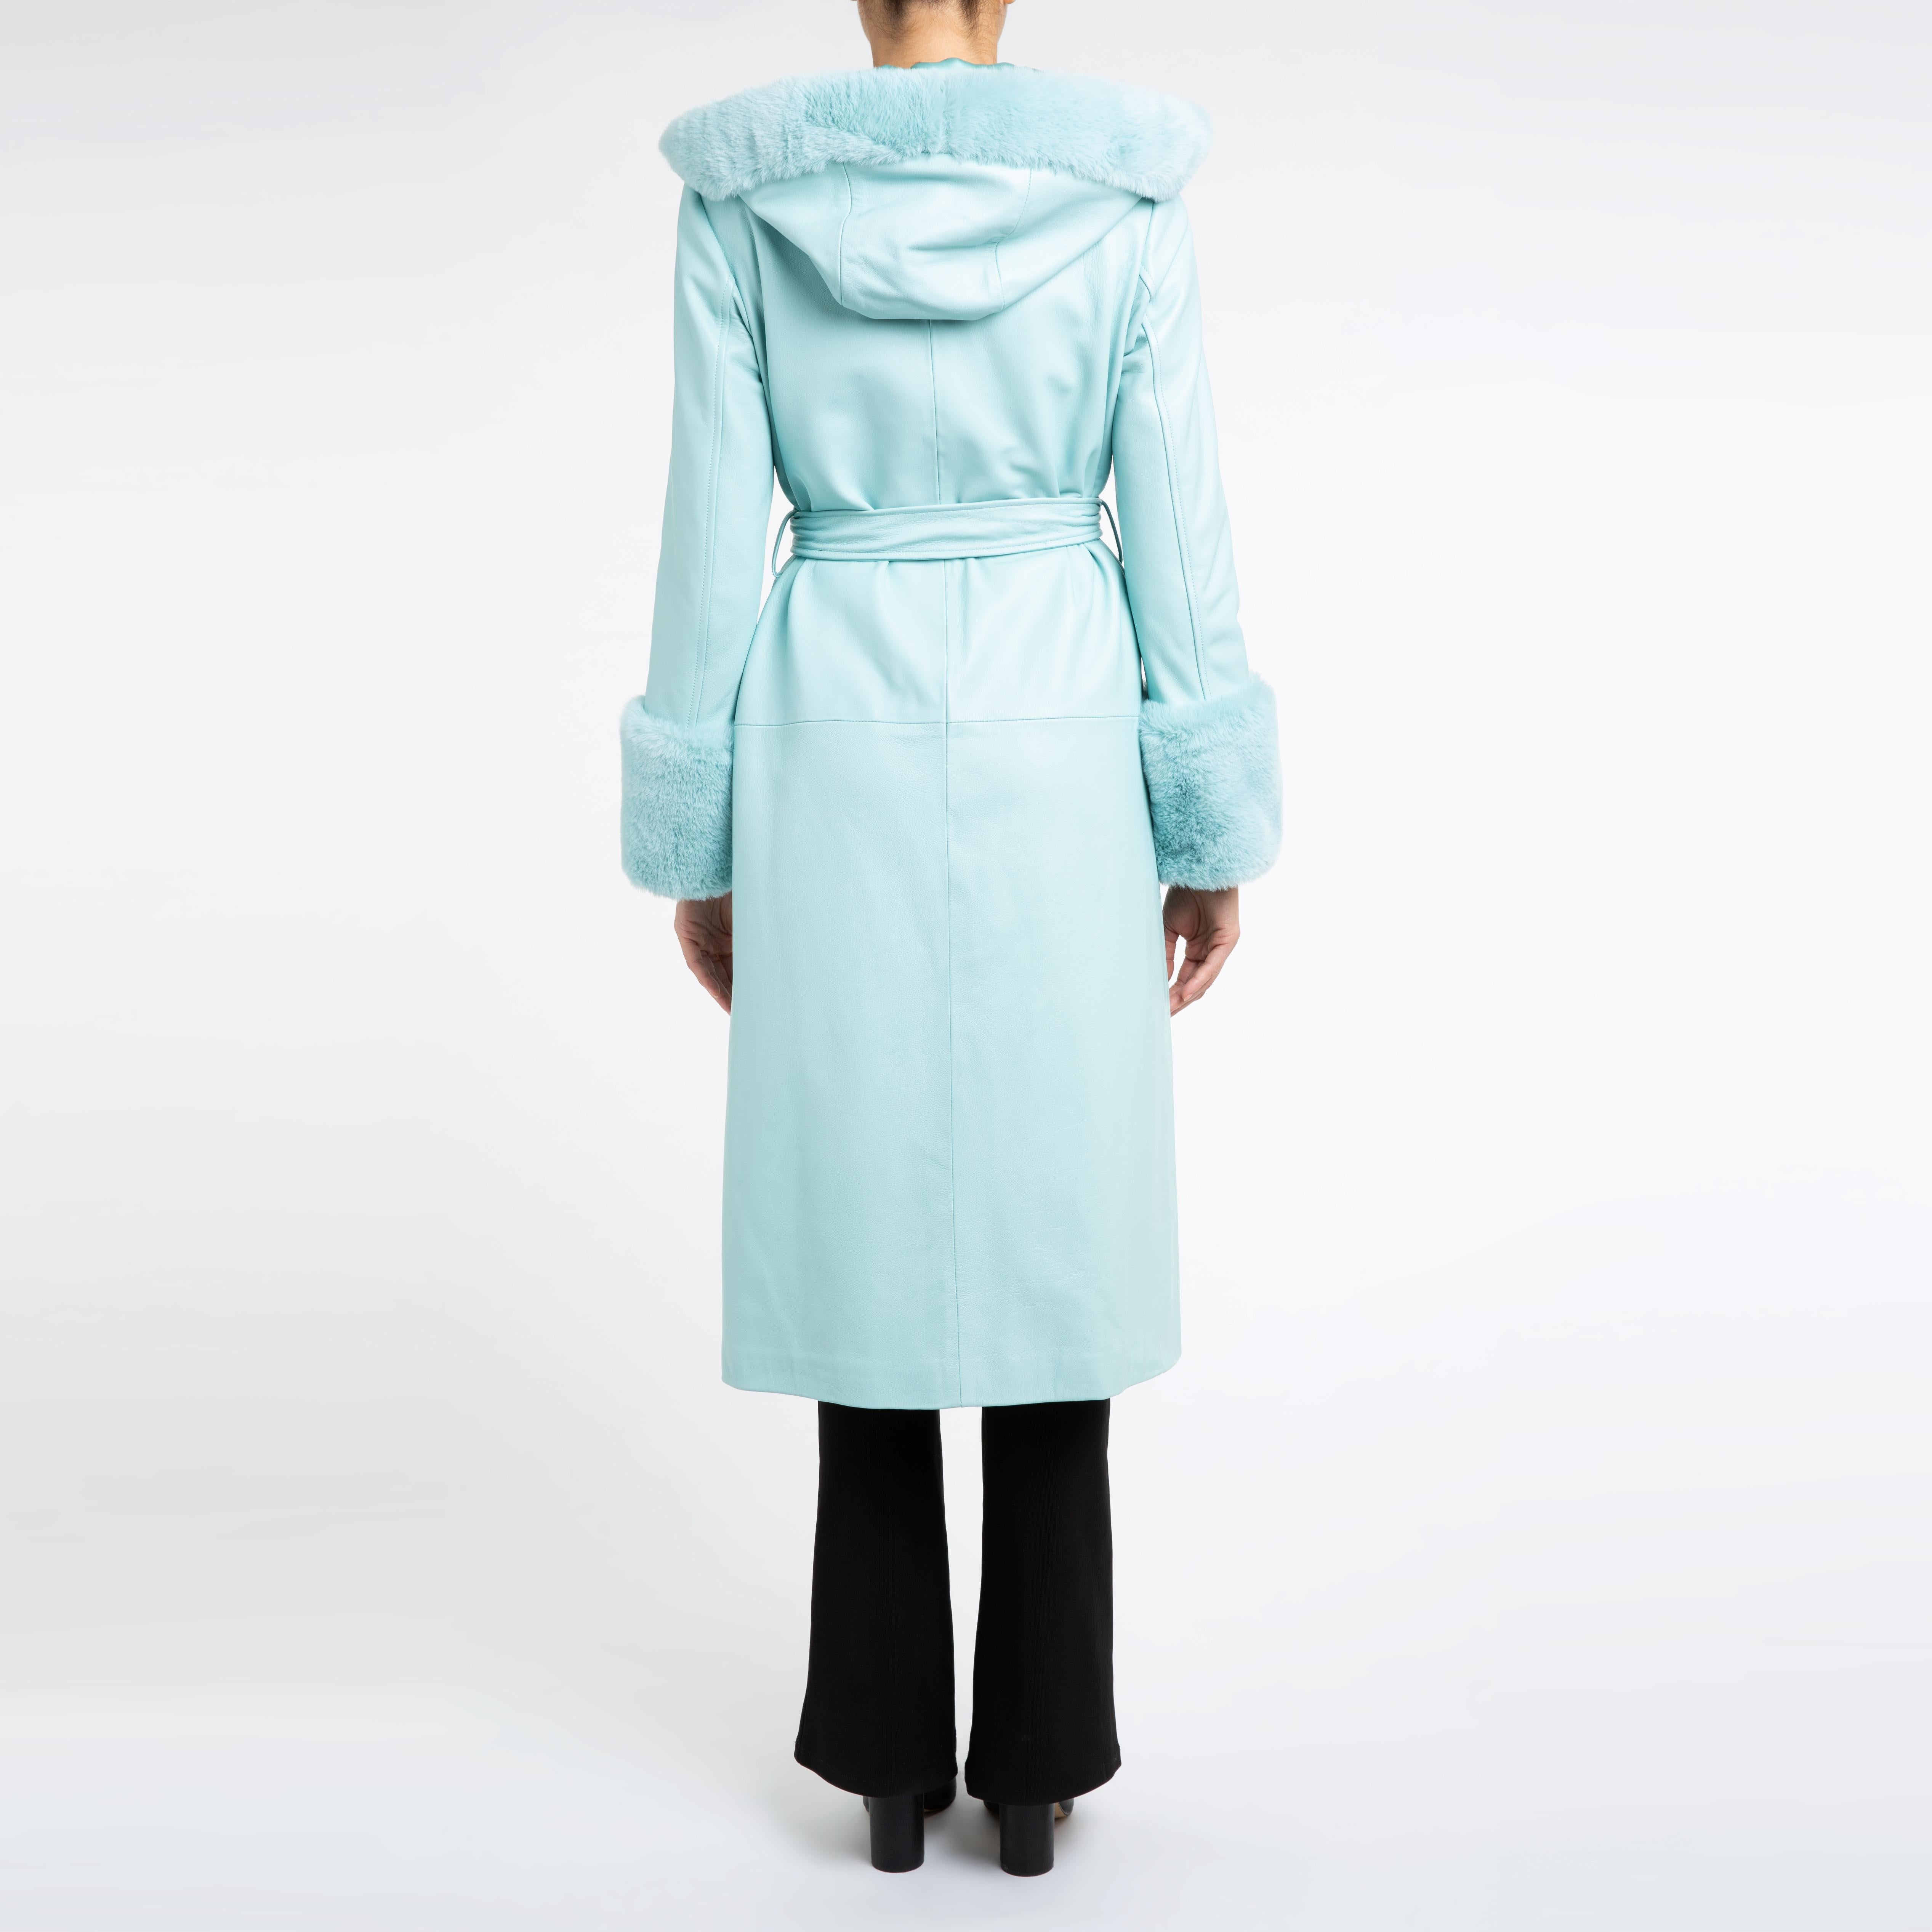 Women's Verheyen London Hooded Leather Coat in Blue Aquamarine & Faux Fur - Size uk 14